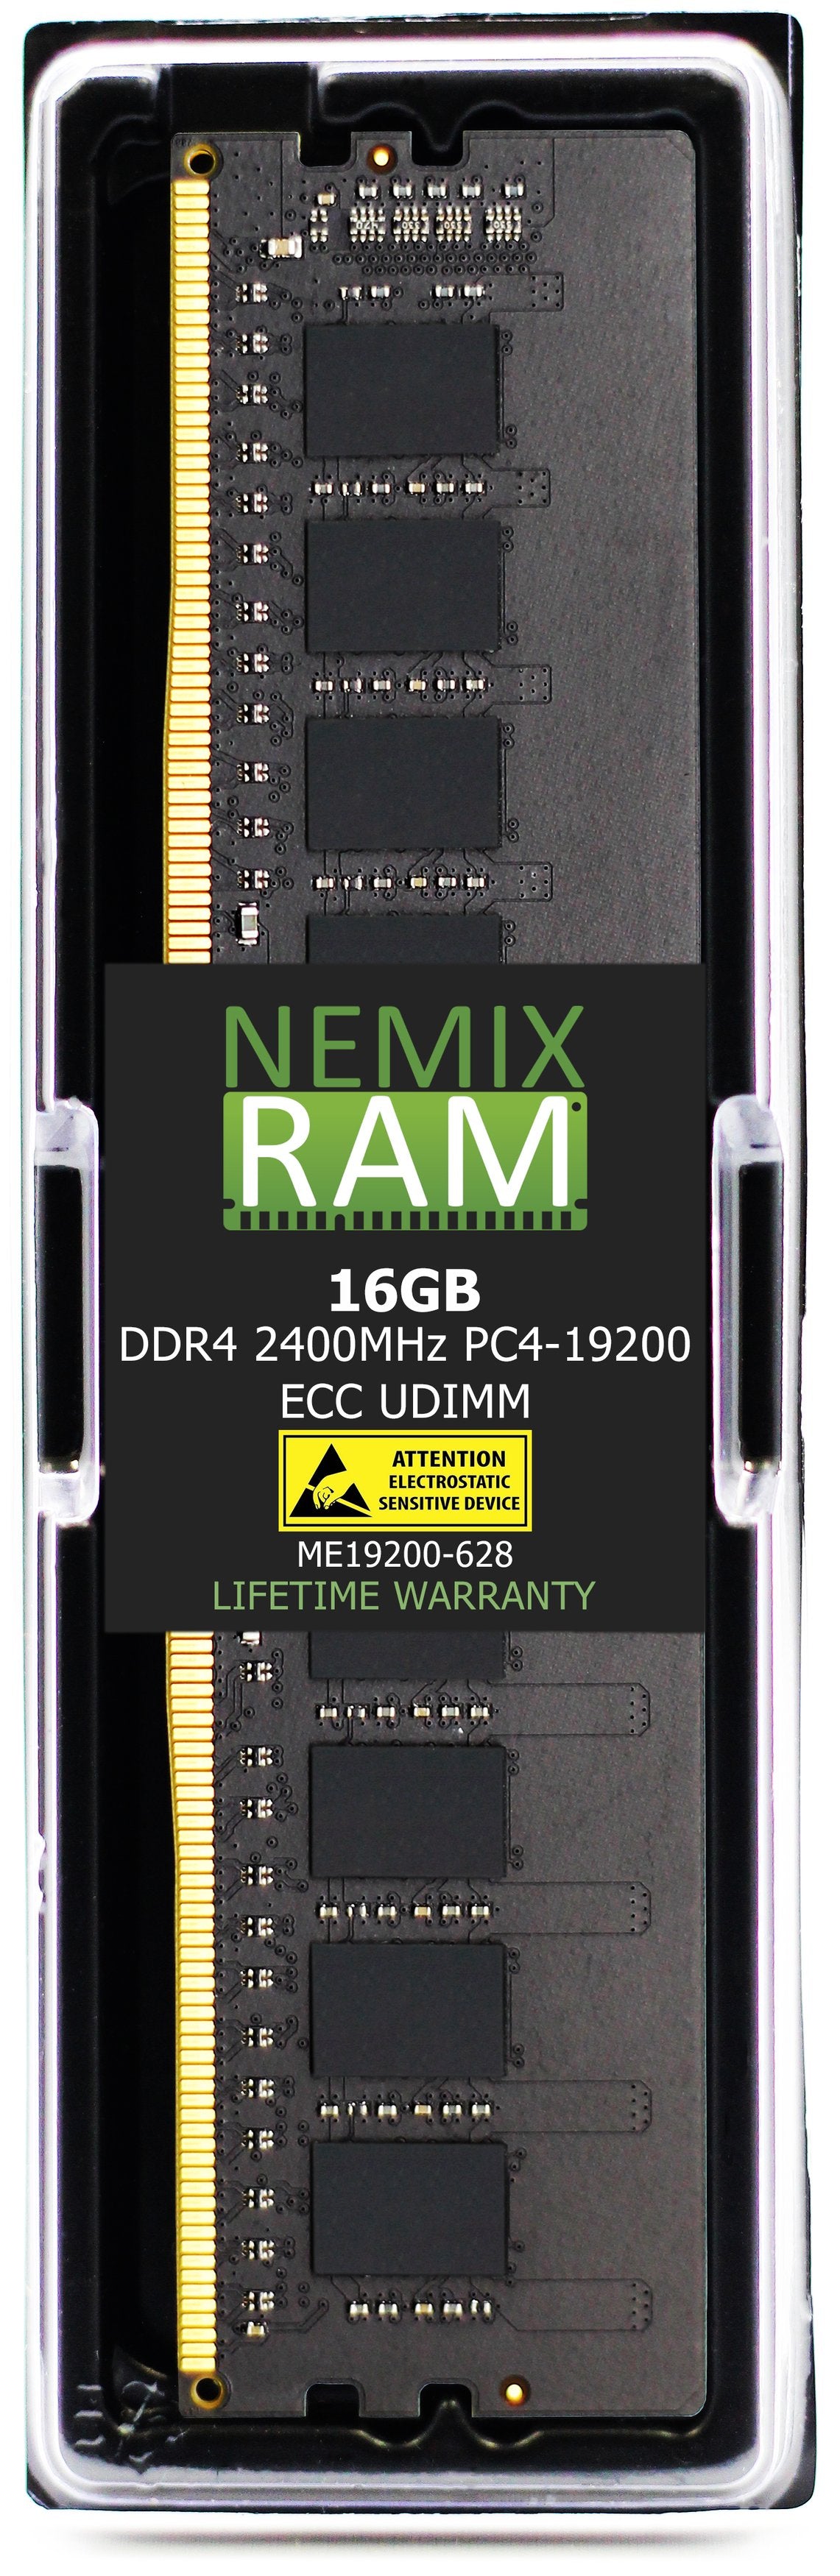 16GB DDR4 2400MHZ PC4-19200 VLP ECC UDIMM Compatible with Supermicro MEM-DR416L-CV01-EU24